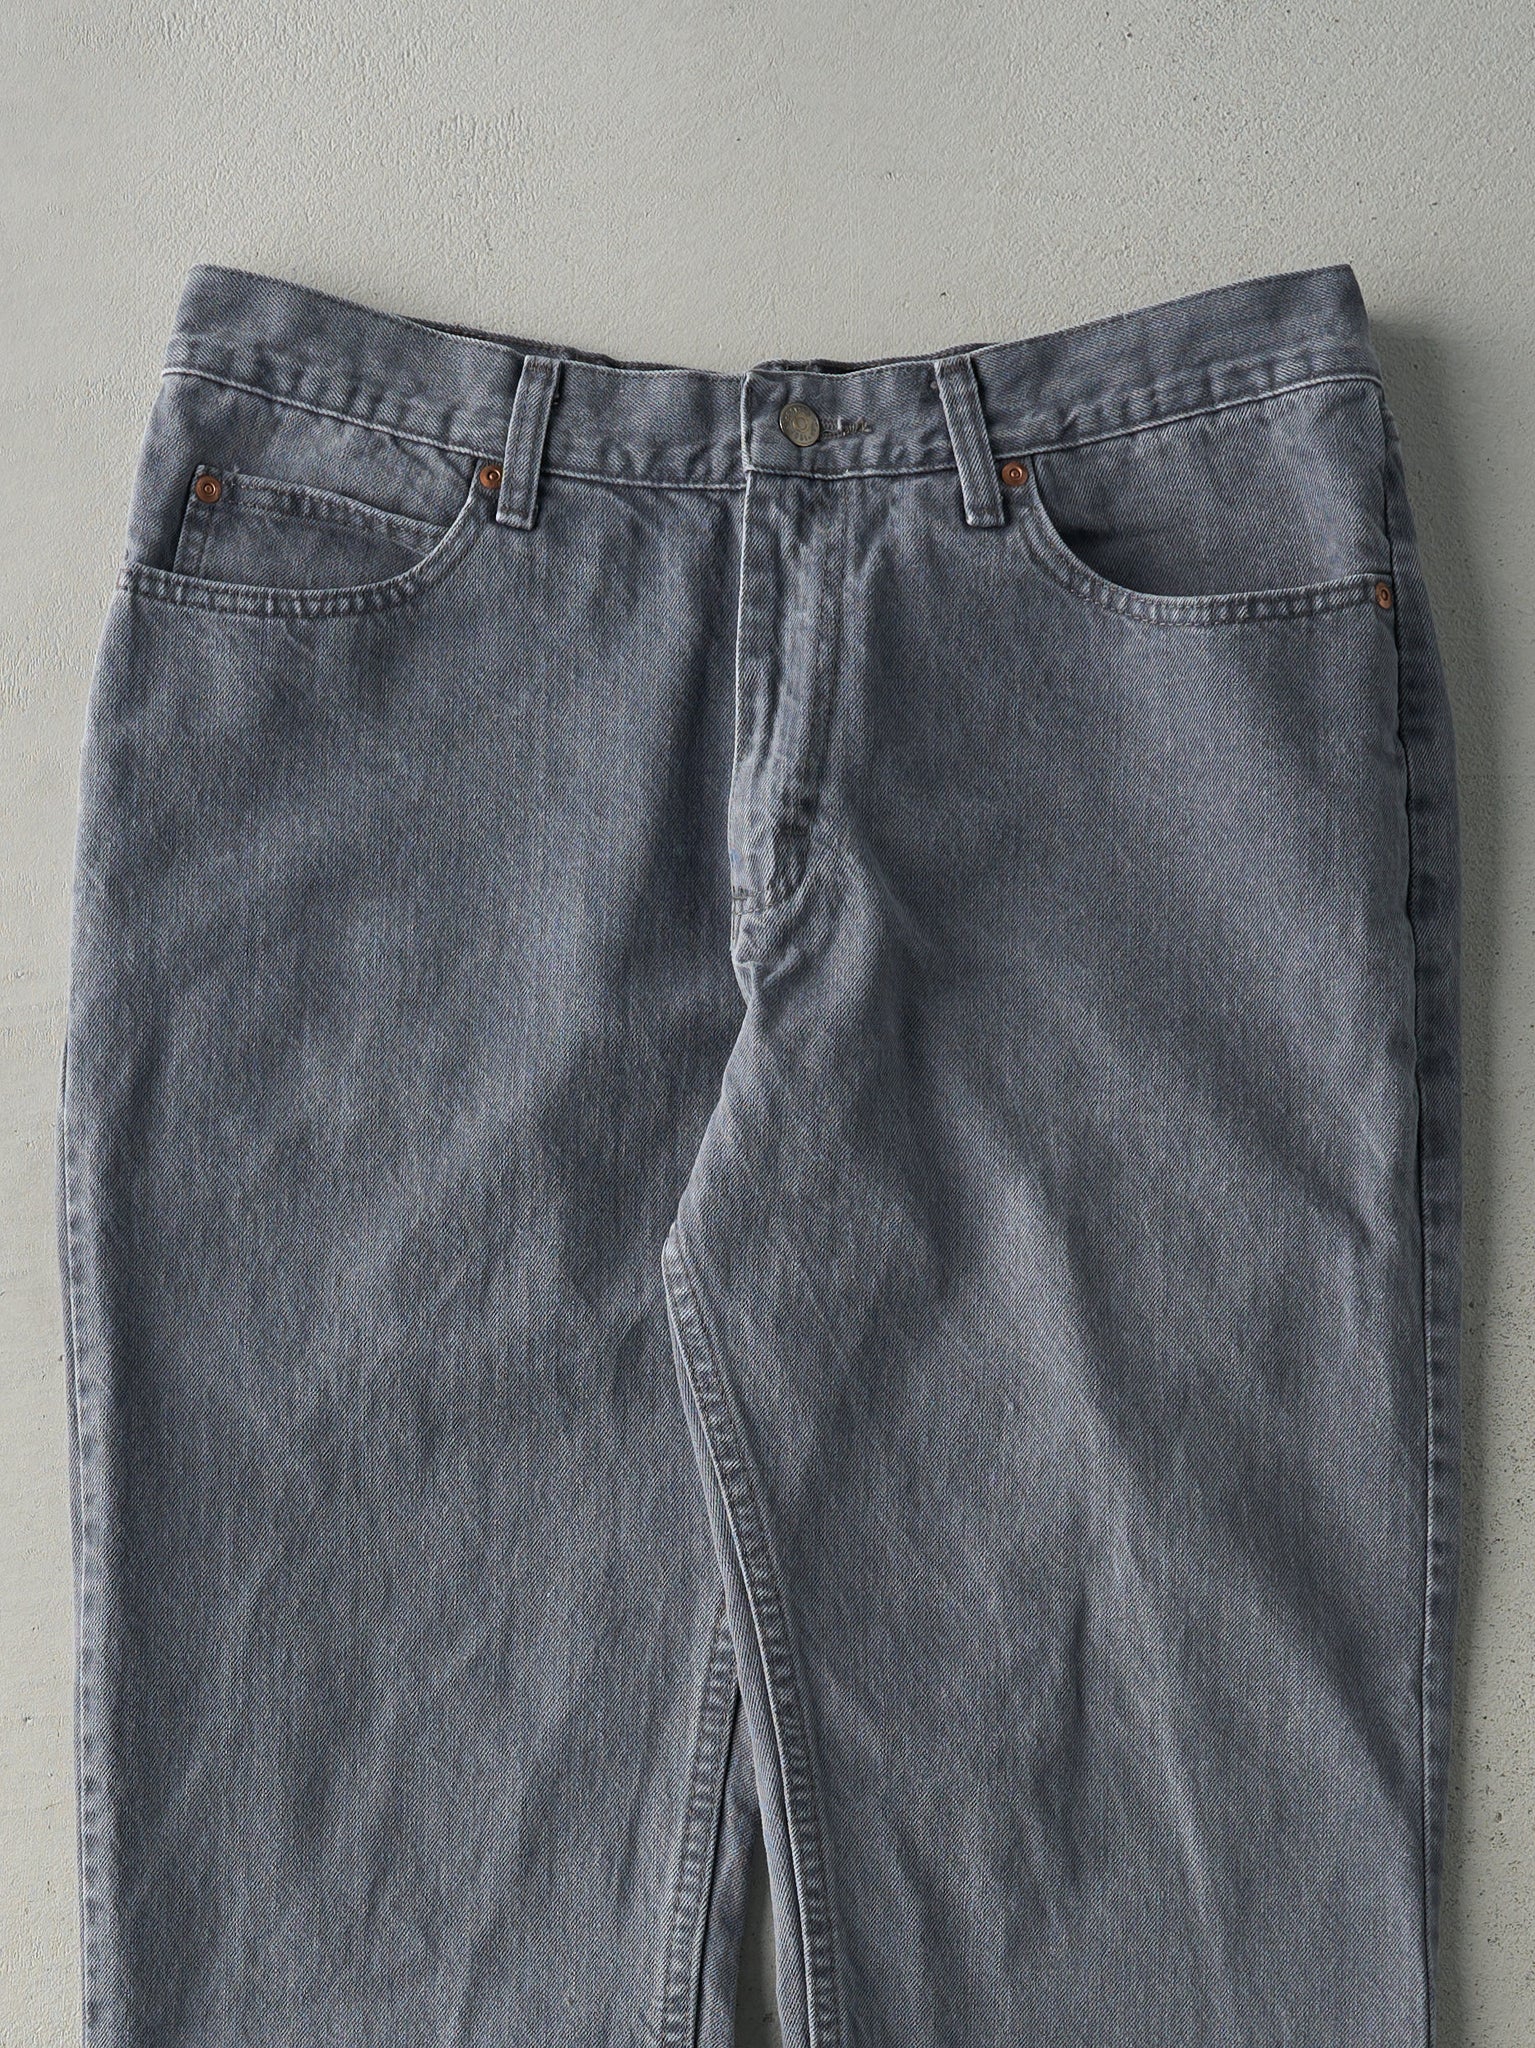 Vintage 90s Grey Lee Denim Pants (34x29)